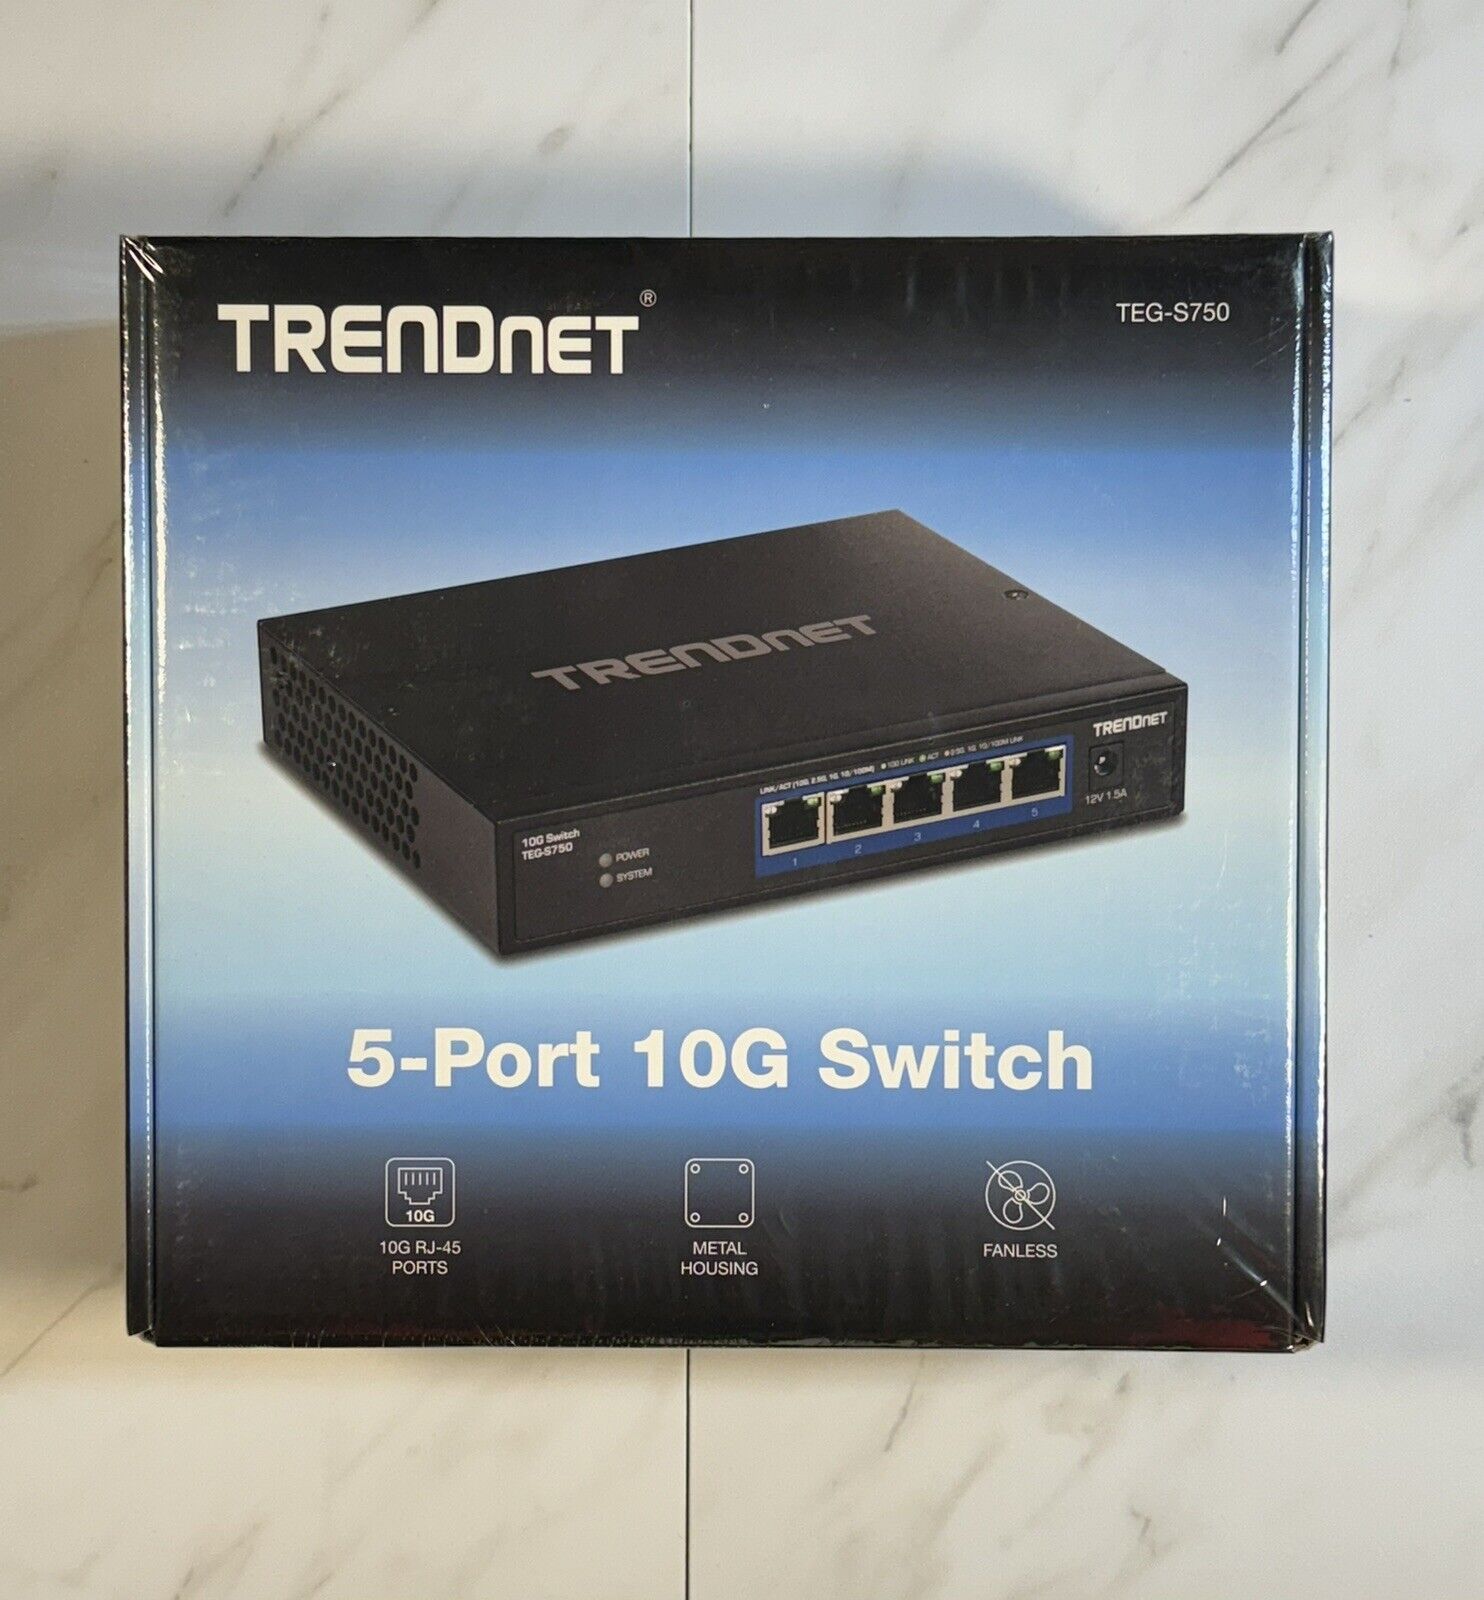 TRENDnet TEGS750 5-Port 10G Ethernet Switch